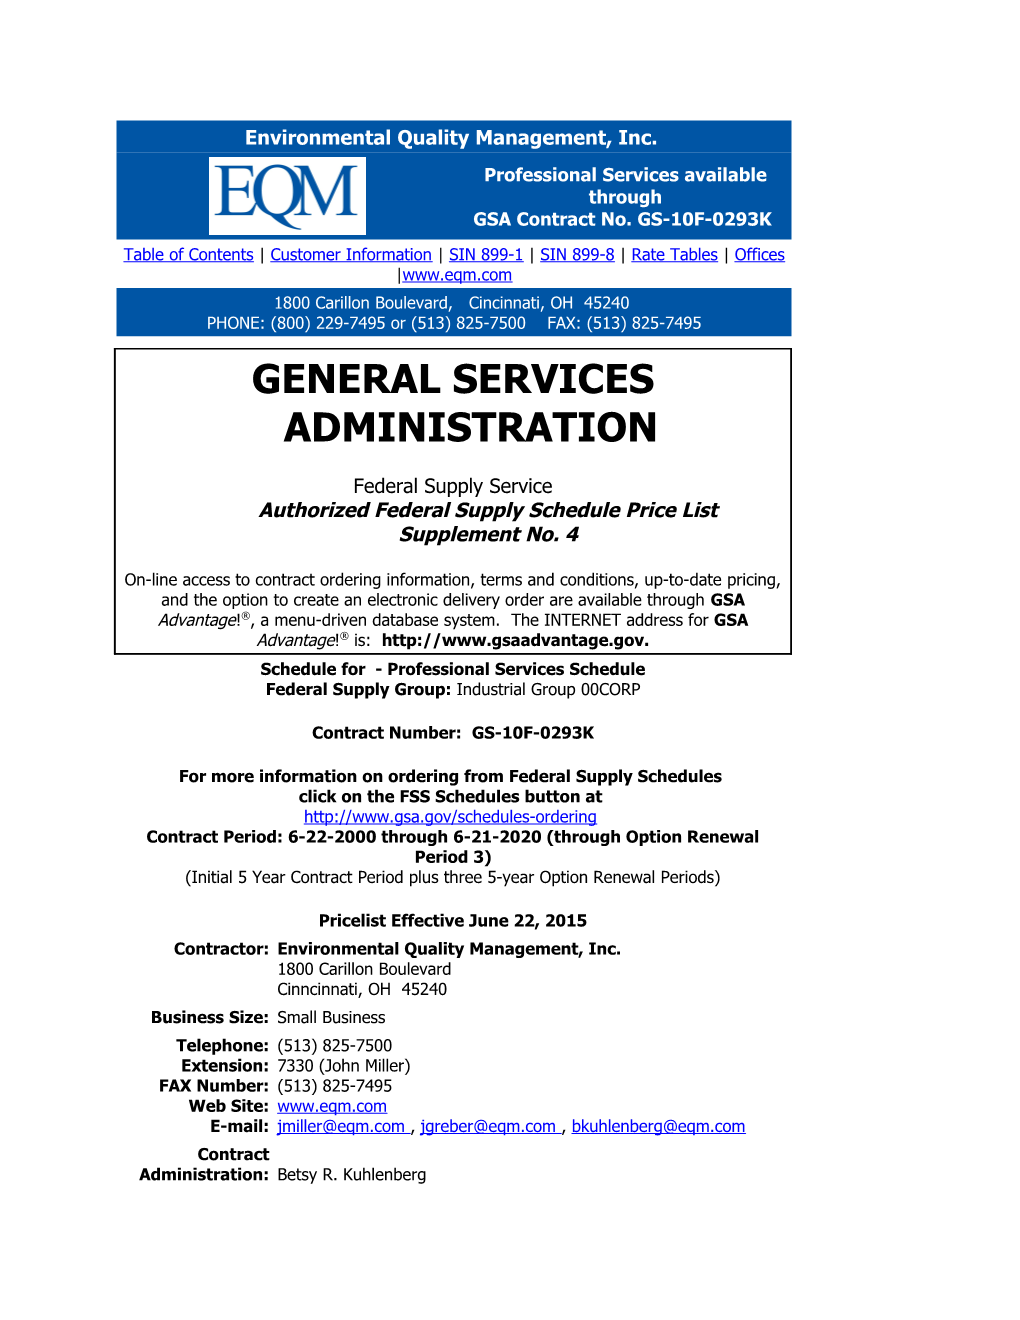 EQM - GSA Advantage Qualifications